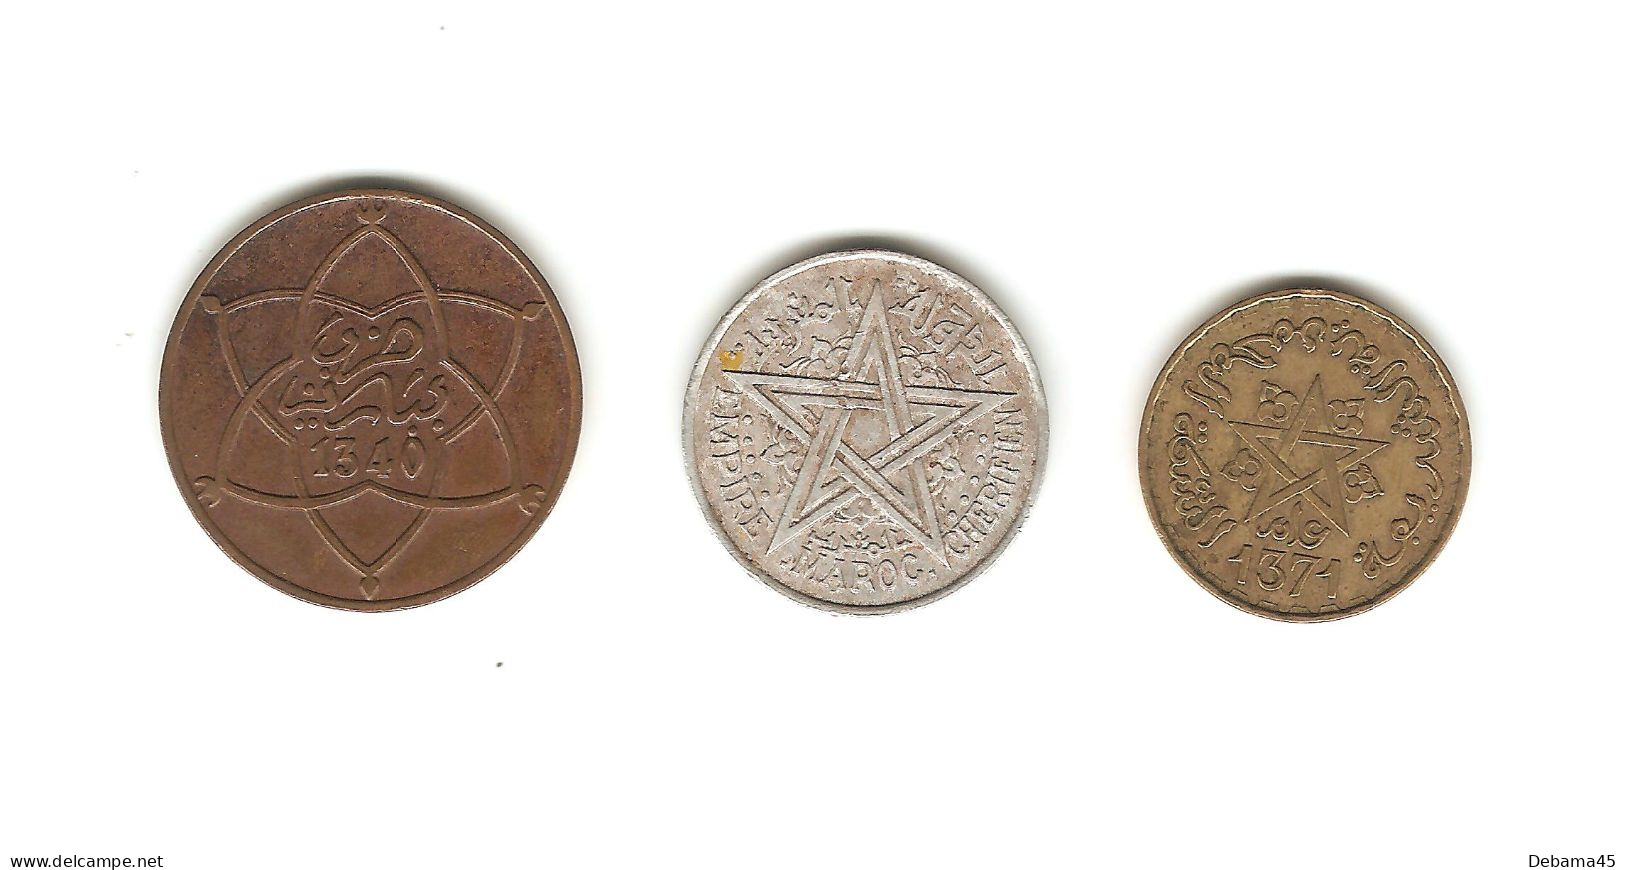 70/ Maroc : 5 Mazunas 1340 - 2 Francs 1370 (1951) - 10 Francs 1371 - Maroc